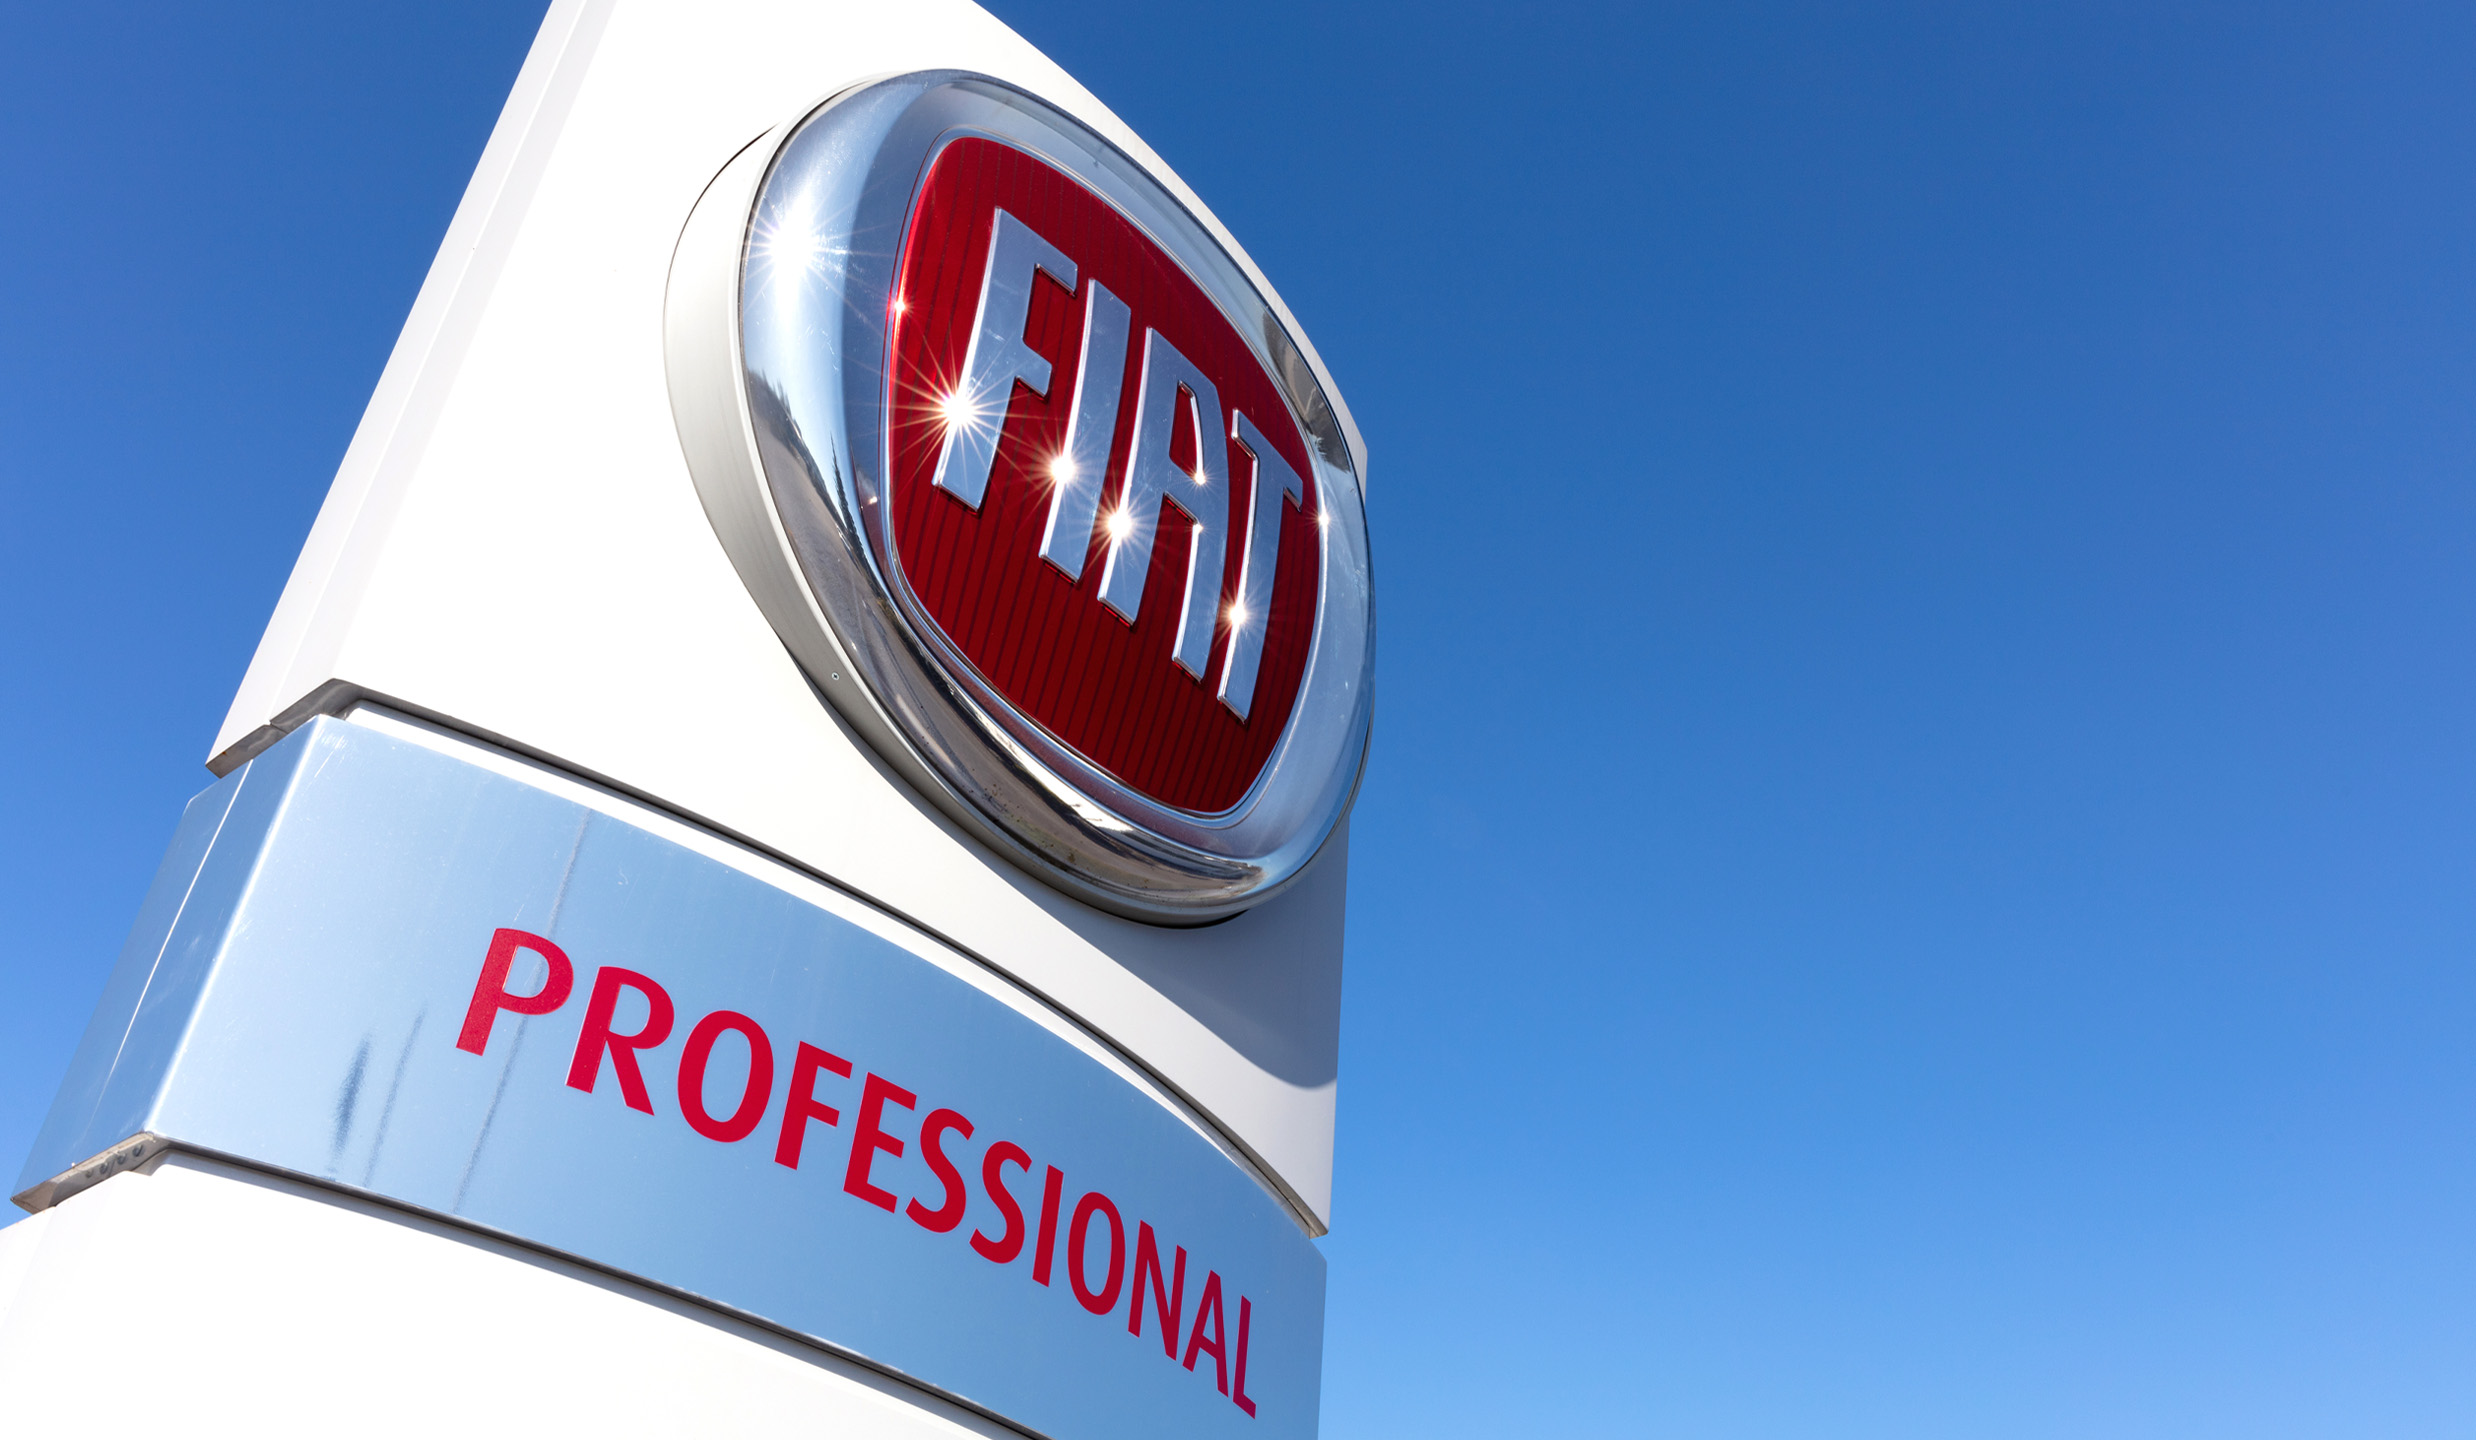 Nuova gamma veicoli Fiat Professional: torna il Fiat Professional Scudo, disponibile anche in versione 100% elettrica